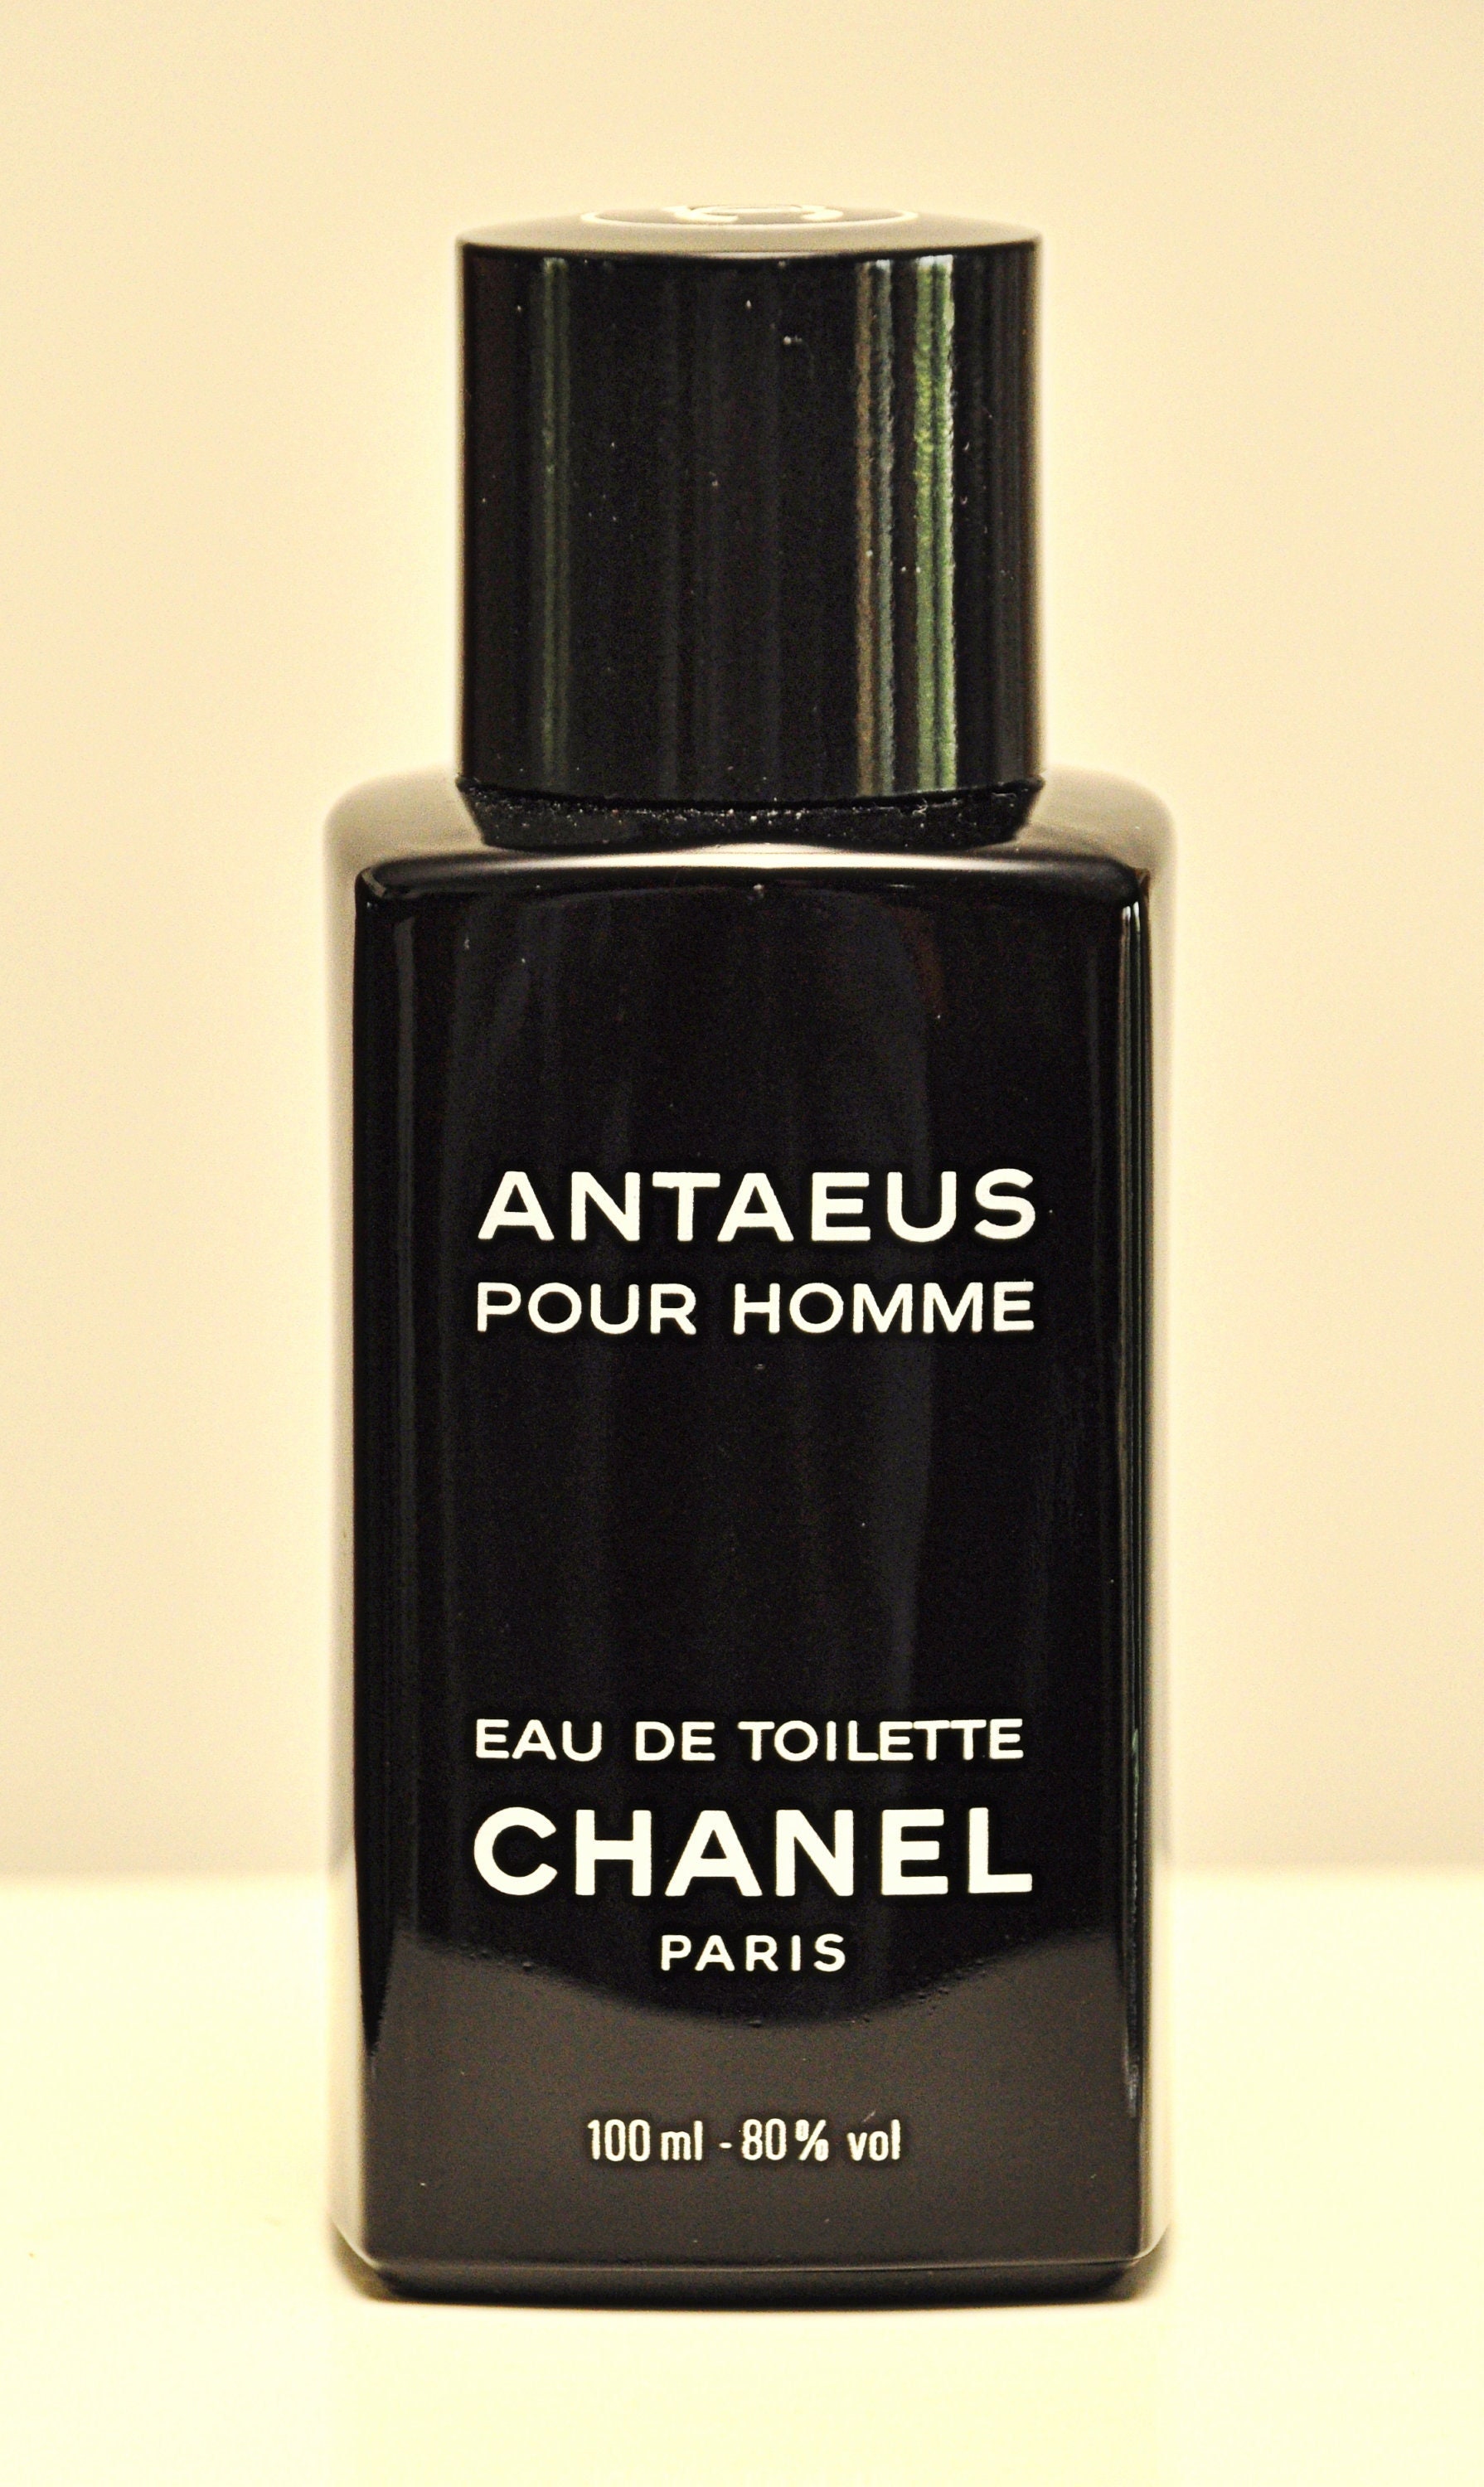 Chanel Antaeus Pour Homme Eau De Toilette 100ml 3.4 Fl. Oz. -  Australia